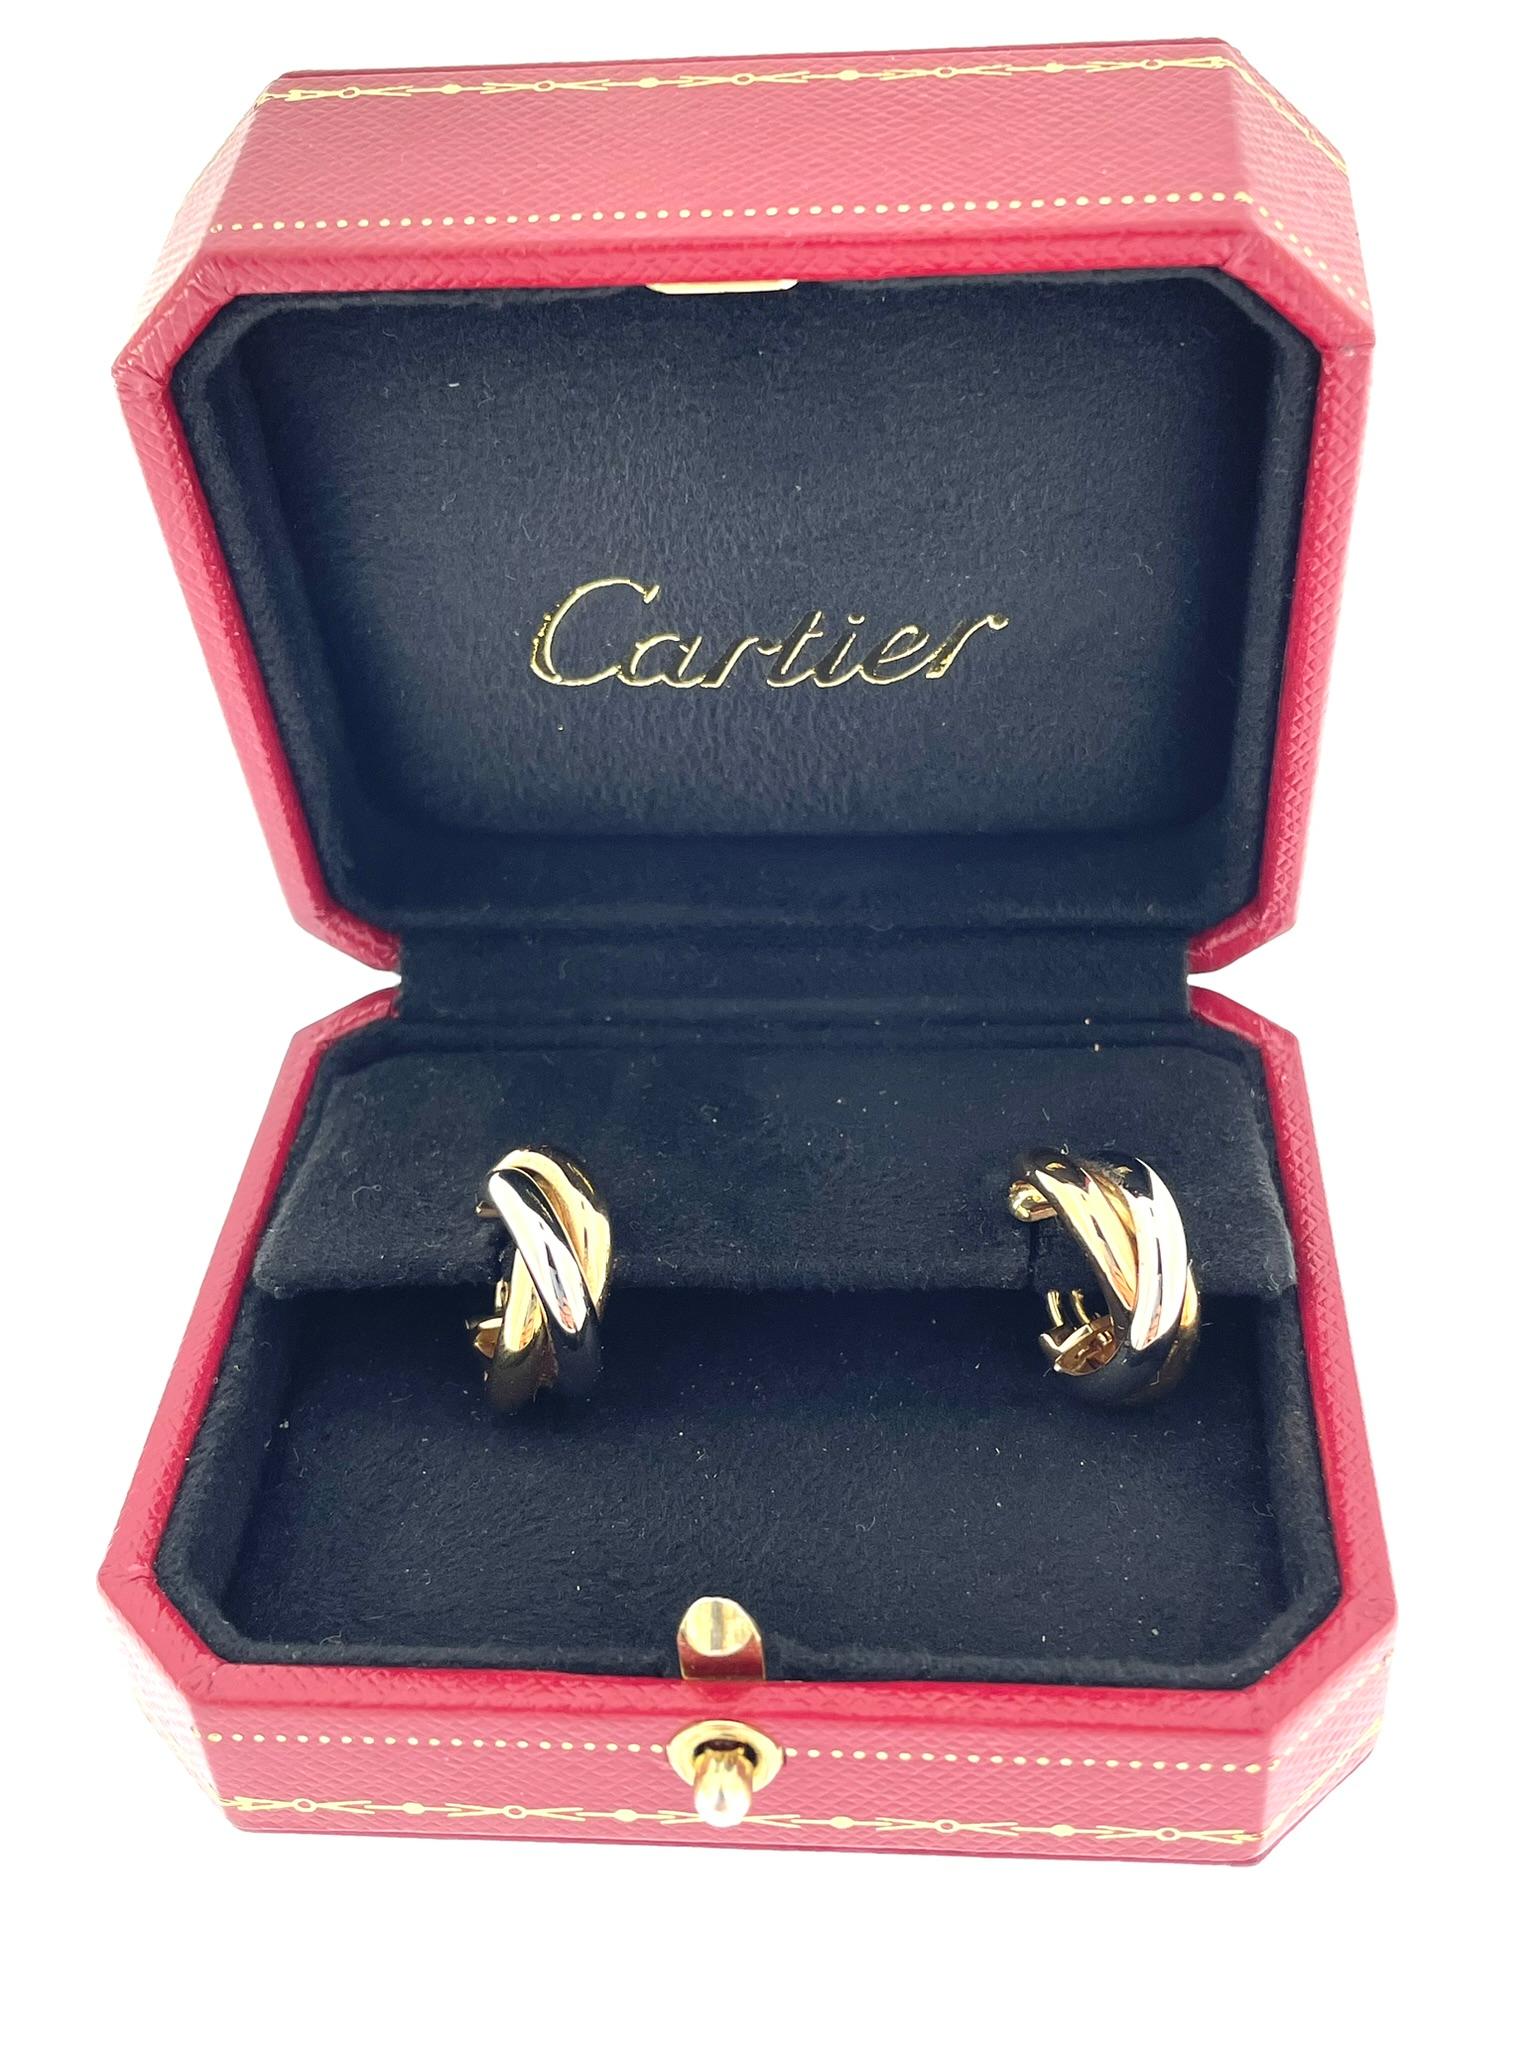 Les boucles d'oreilles Cartier Trinity en or 18 carats sont un accessoire luxueux et emblématique créé par la célèbre maison de joaillerie française Cartier. Ces boucles d'oreilles font partie de la collection Trinity de Cartier, connue pour son